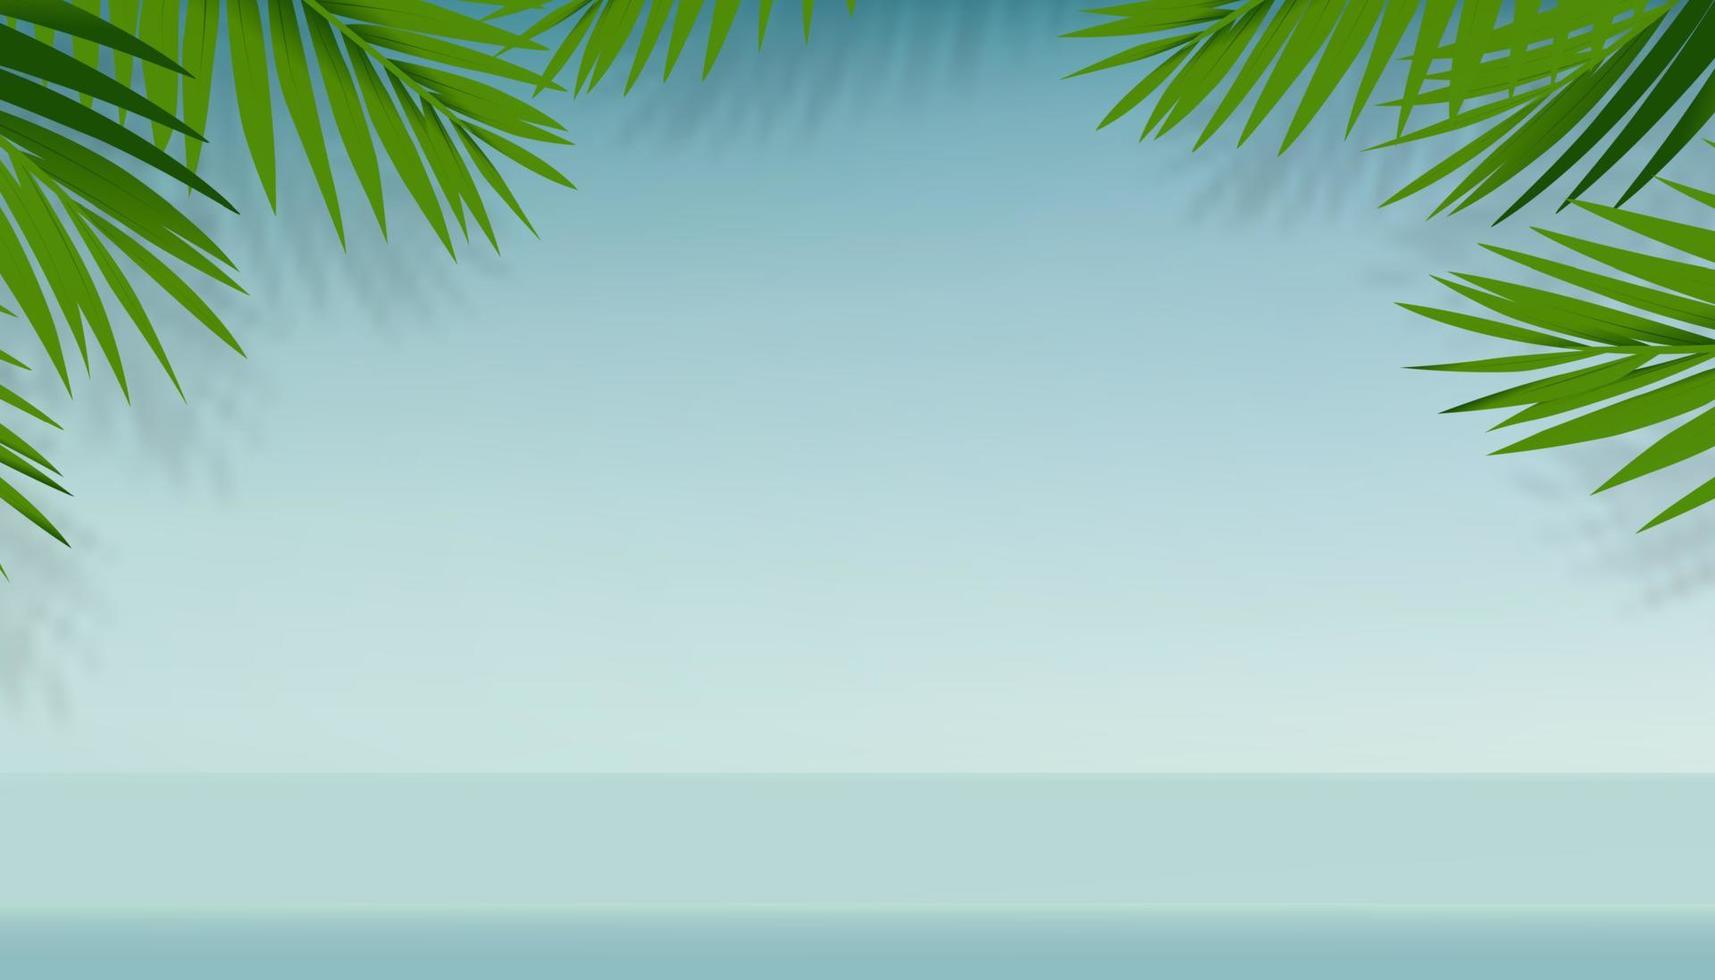 estate sfondo studio camera con palma le foglie su blu wall.vector 3d galleria camera con rami tropicale le foglie con ombra, fondale sfondo minimo design per primavera estate prodotti presentazione vettore